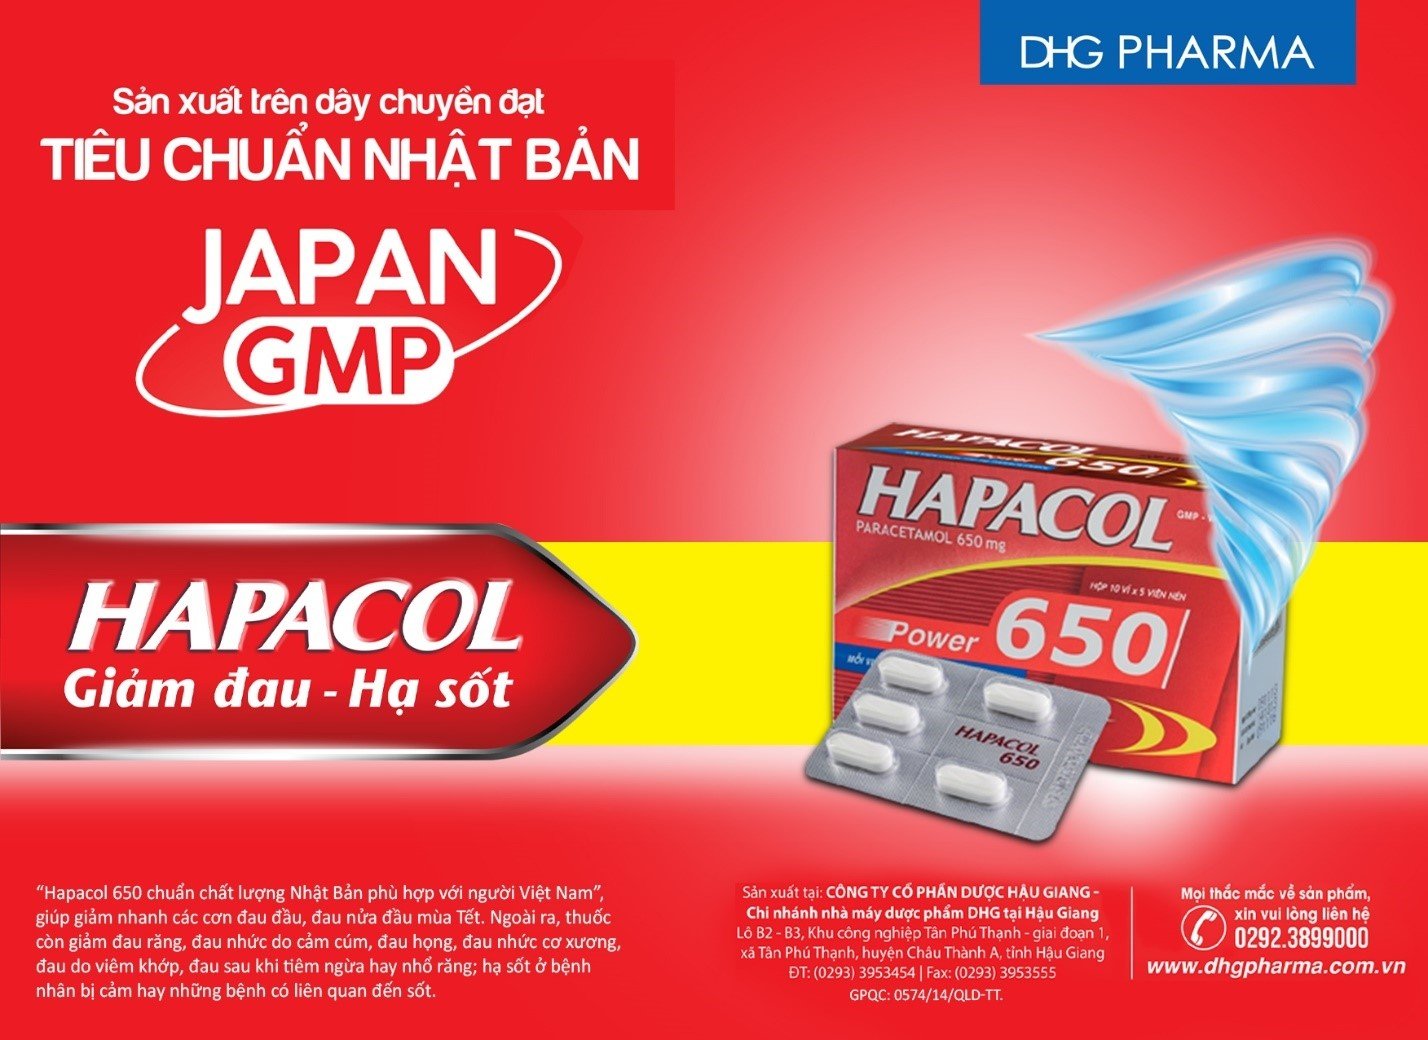 Sản phẩm Hapacol 650 giúp giảm cơn đau nhanh và hiệu quả